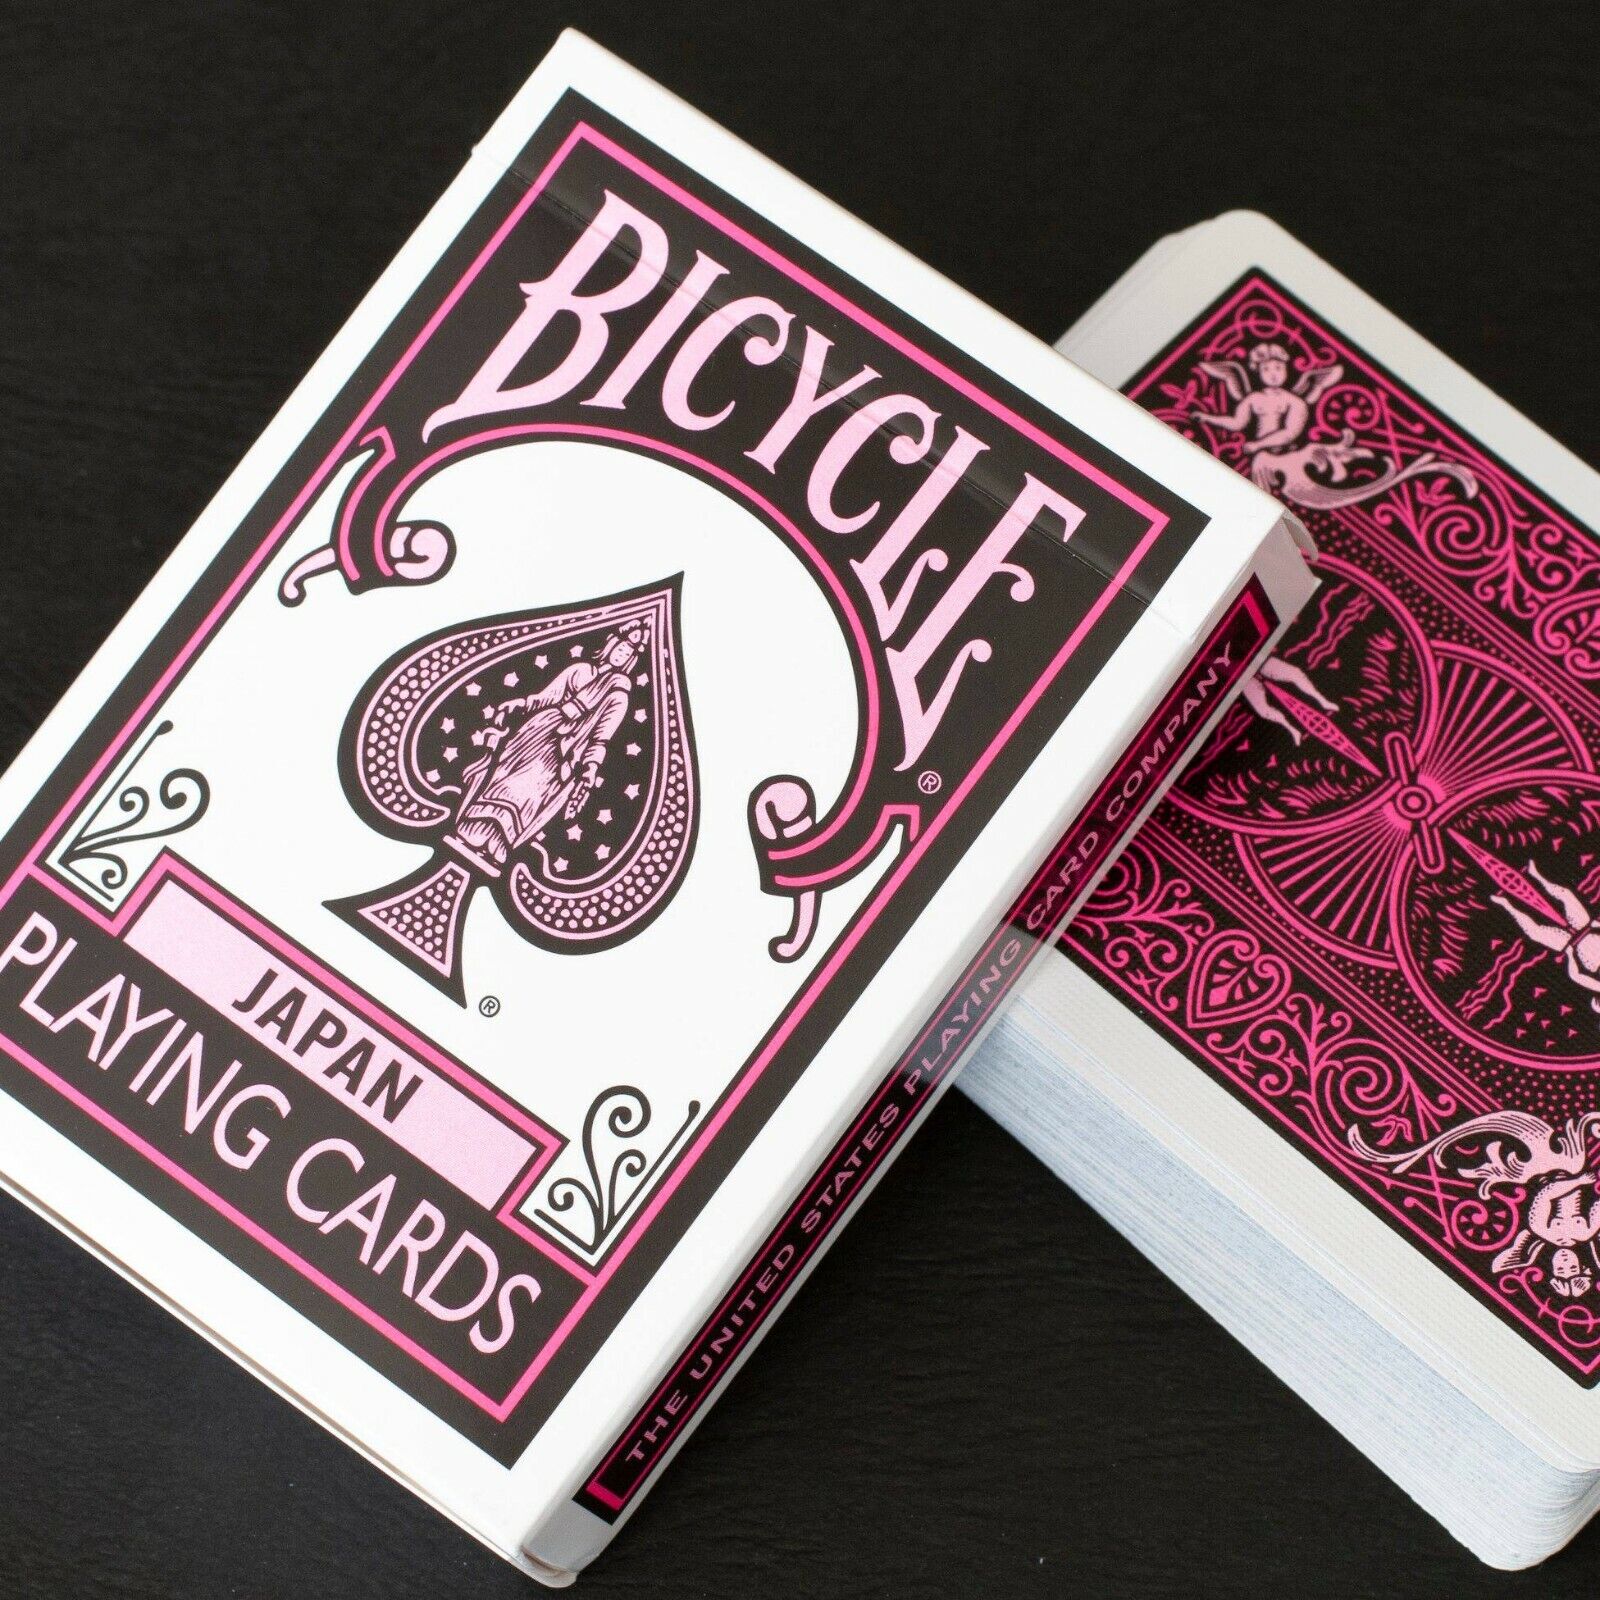 1 DECK Bicycle Japan black-pink playing cards  USA SELLER